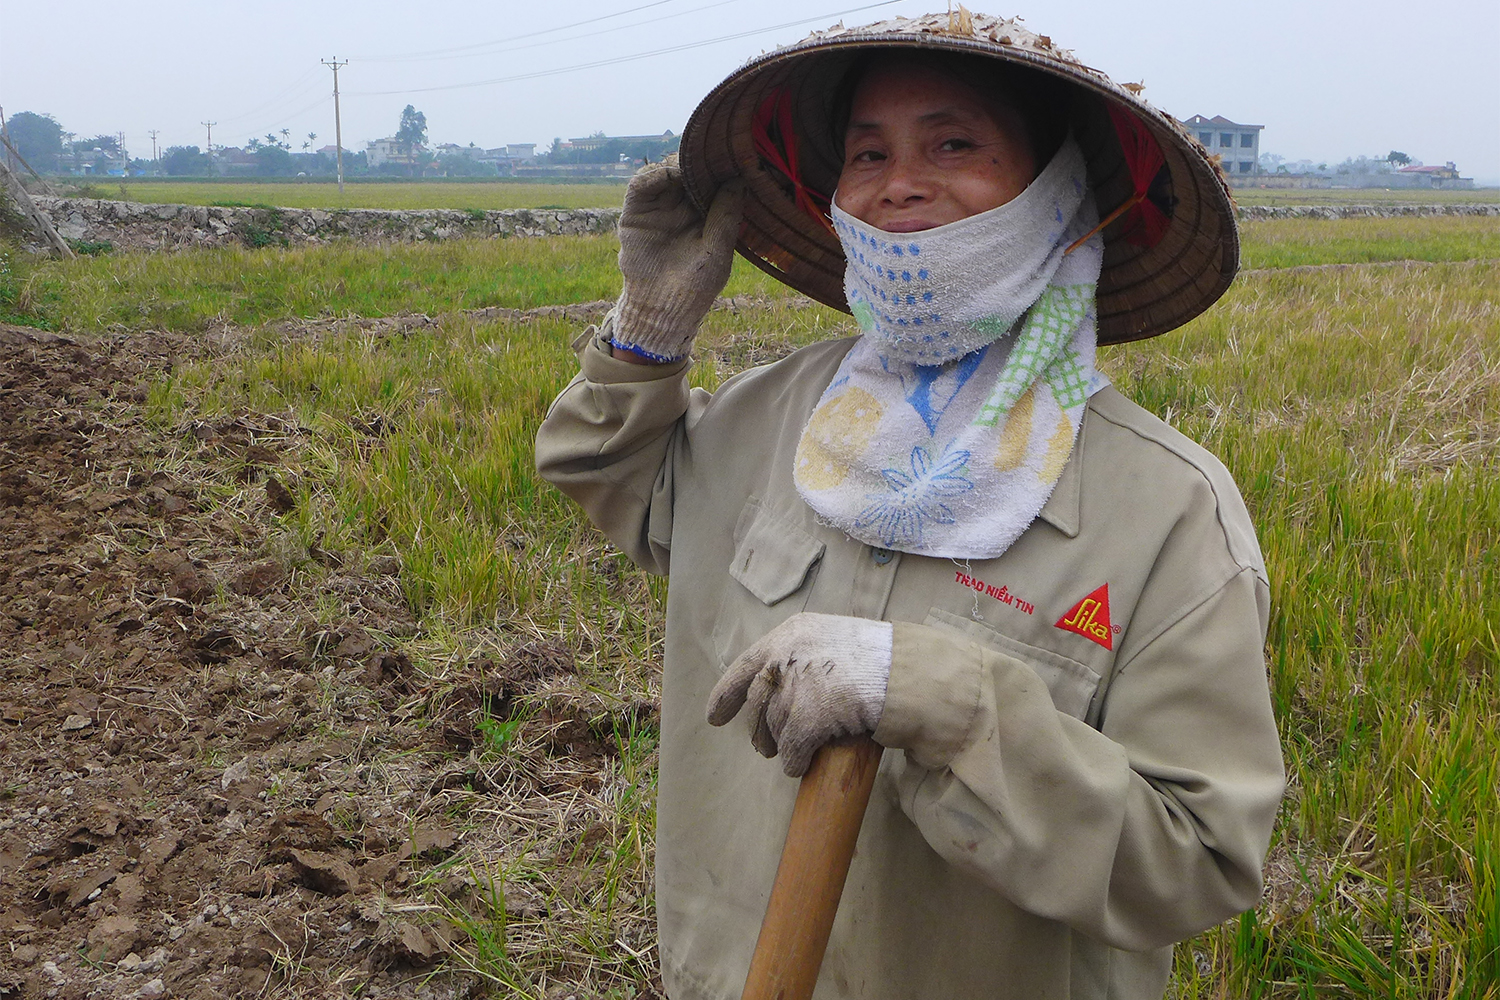 Mai porte un grand chapeau conique, typique du Vietnam. Cela lui permet de se protéger du soleil et de la pluie.